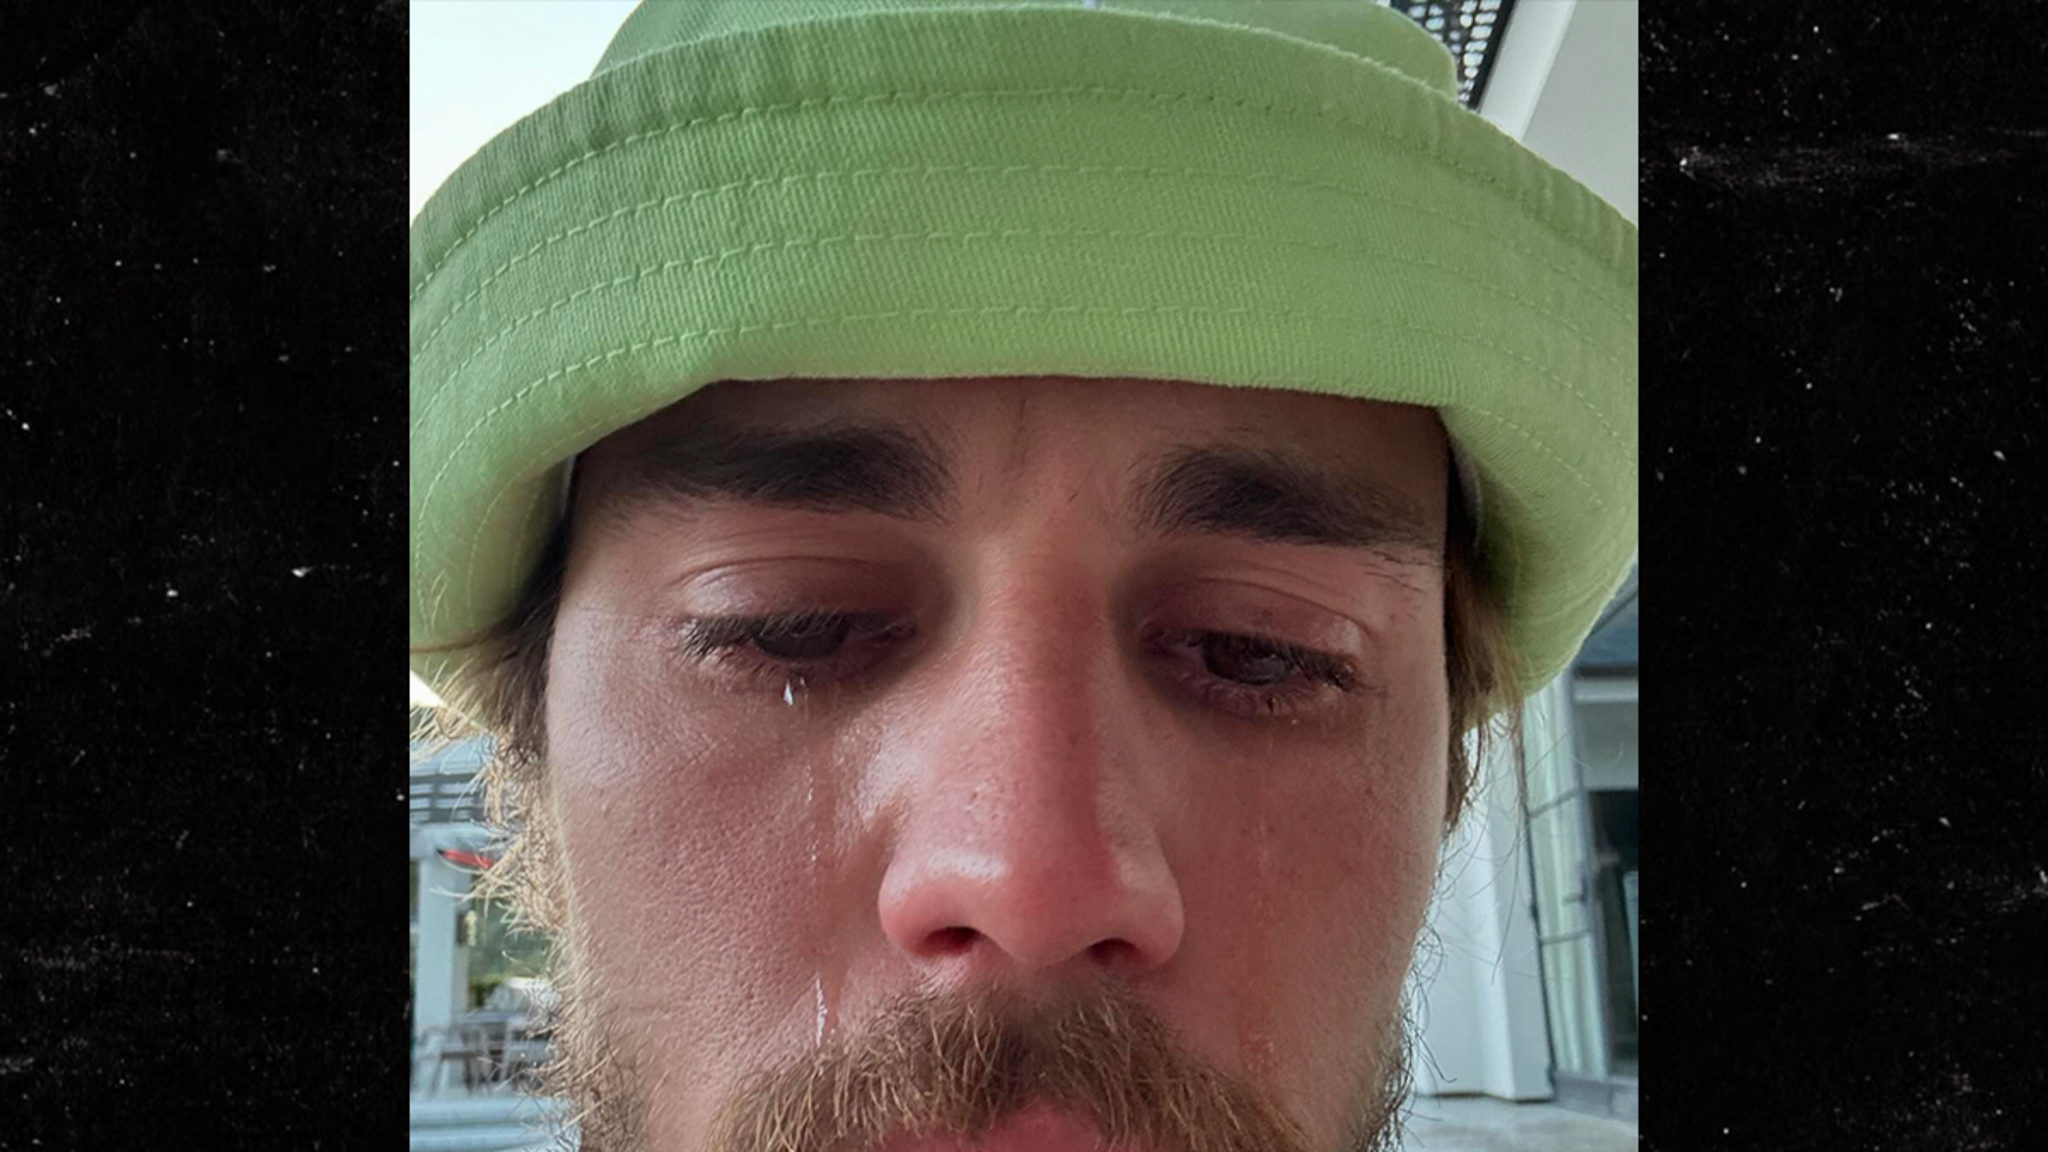 Justin Bieber comparte fotos de sí mismo llorando, Hailey Bieber responde